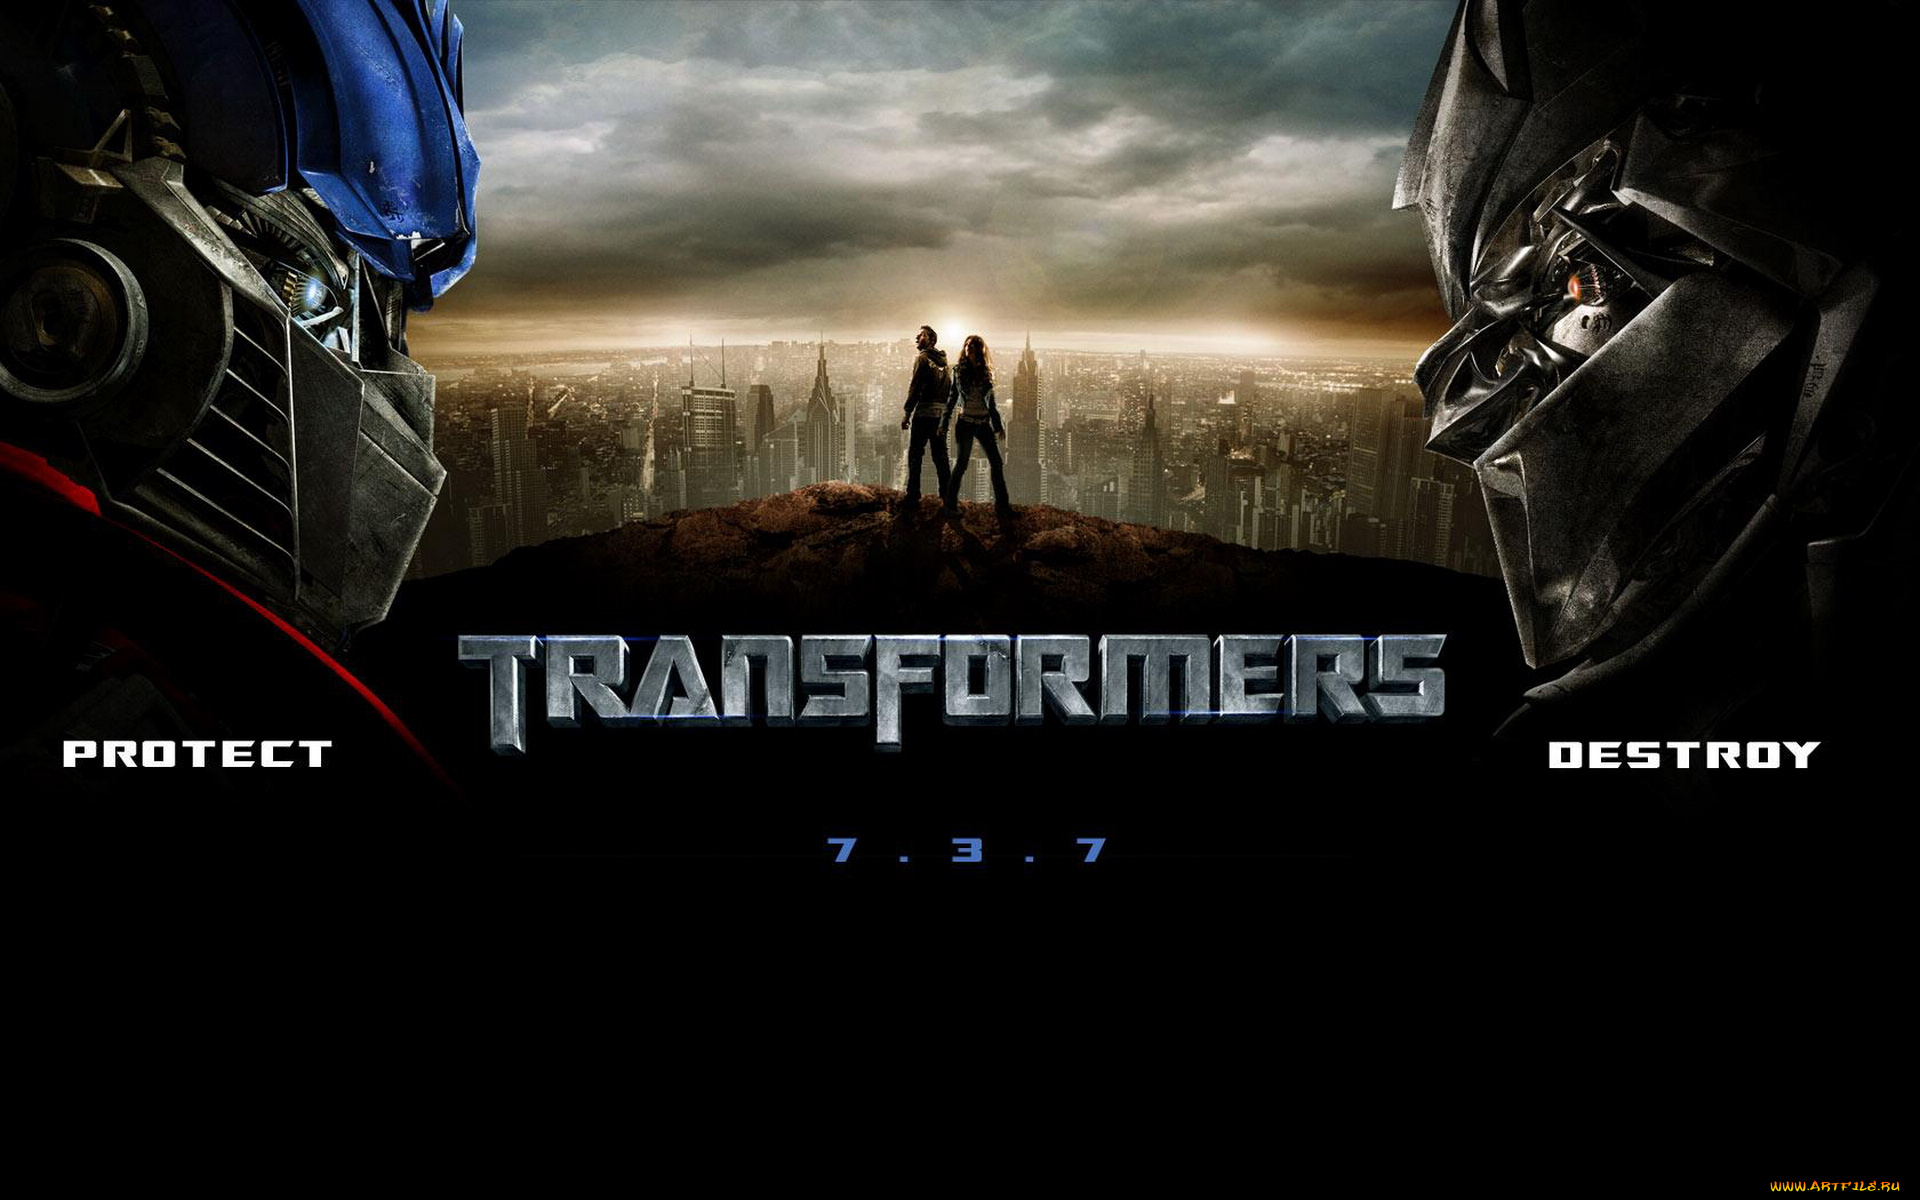 кино, фильмы, transformers, трансформеры, роботы, люди, город